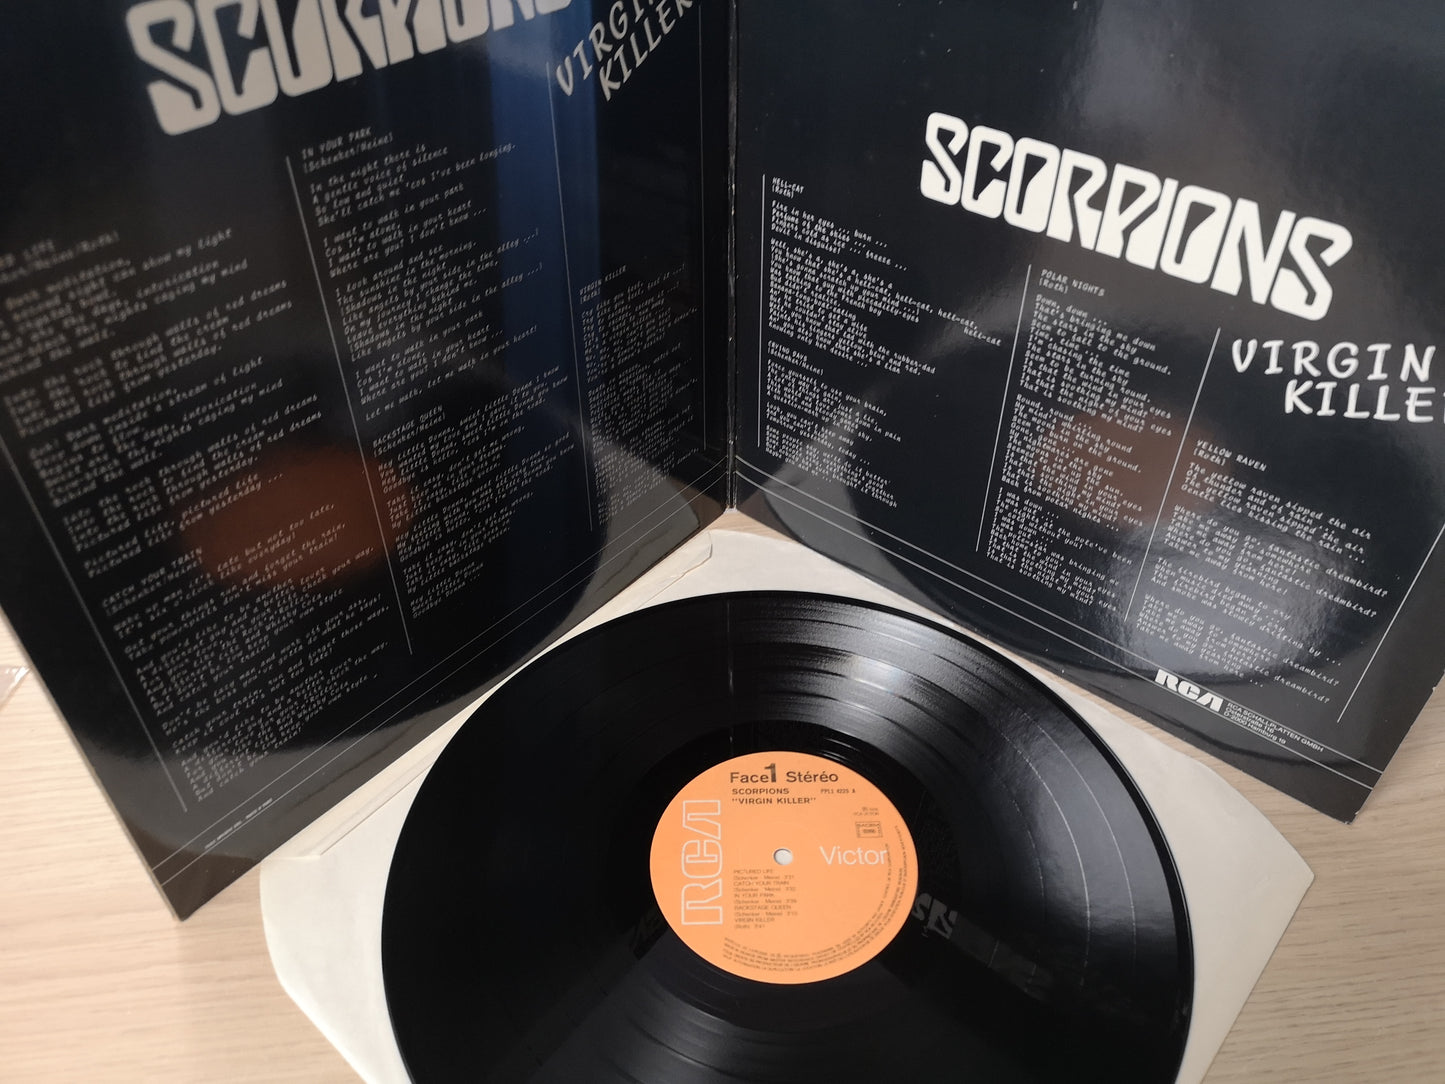 Scorpions "Virgin Killer" Orig France 1976 VG++/VG++ (Gatefold Cover)